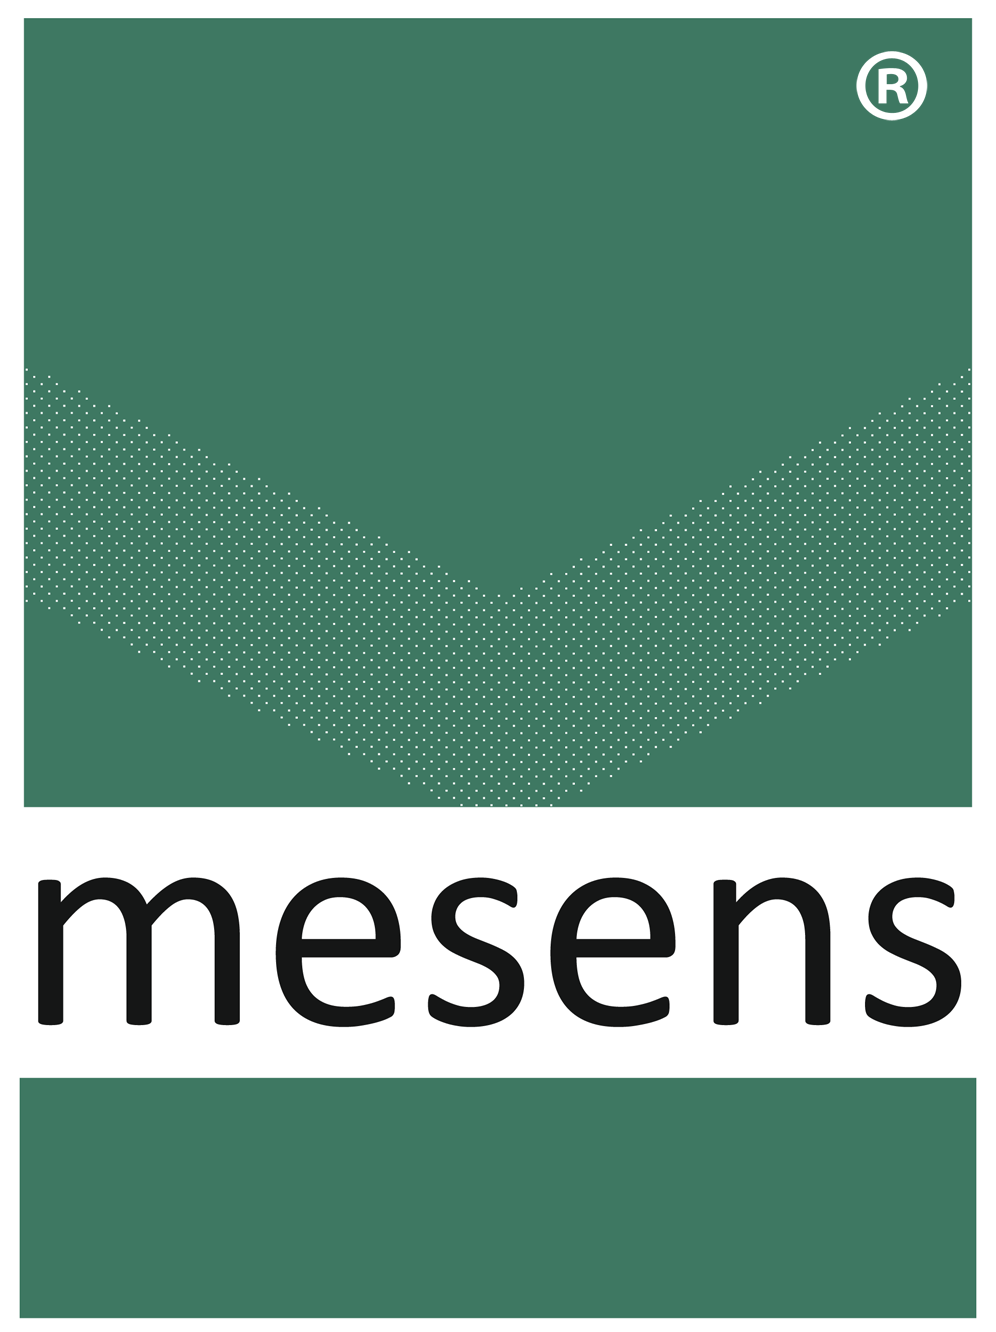 mesens logo png